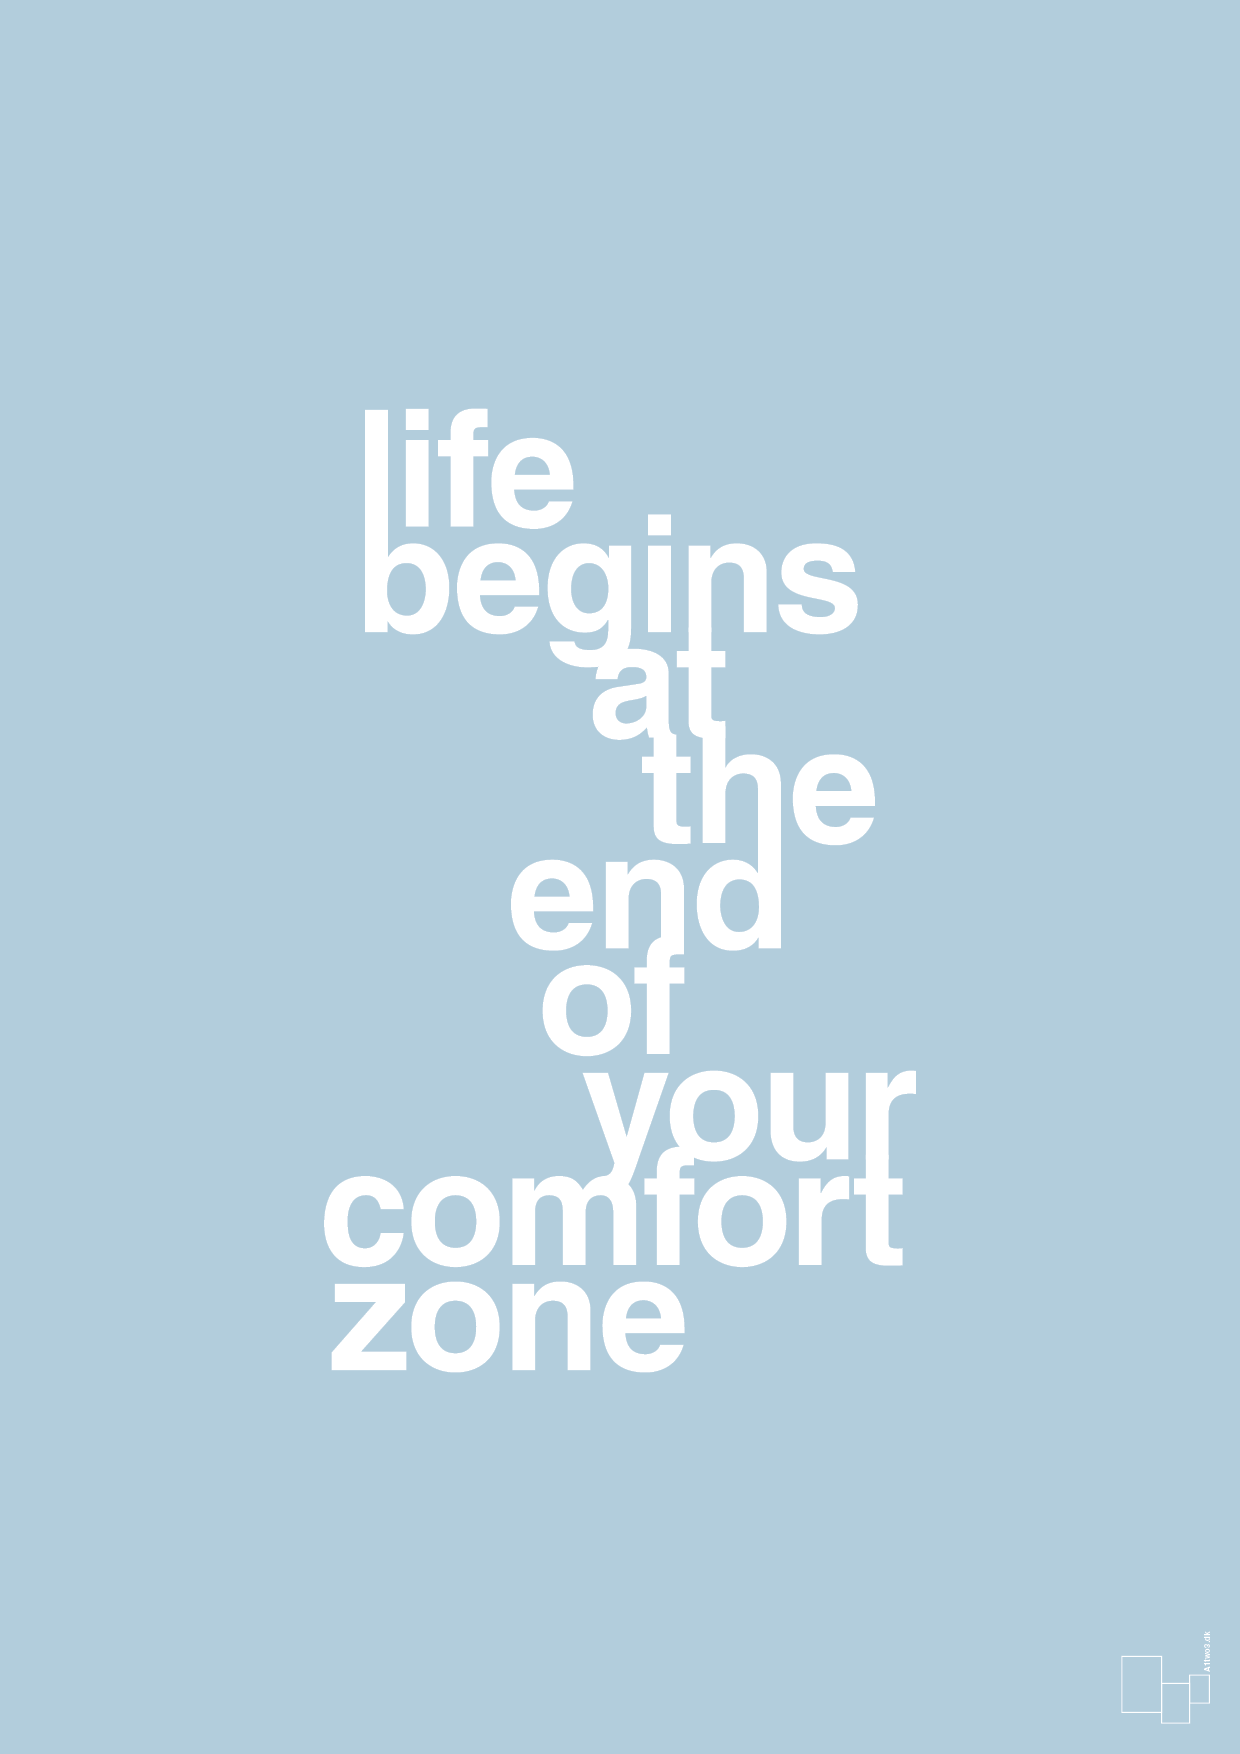 life begins at the end of your comfort zone - Plakat med Ordsprog i Heavenly Blue